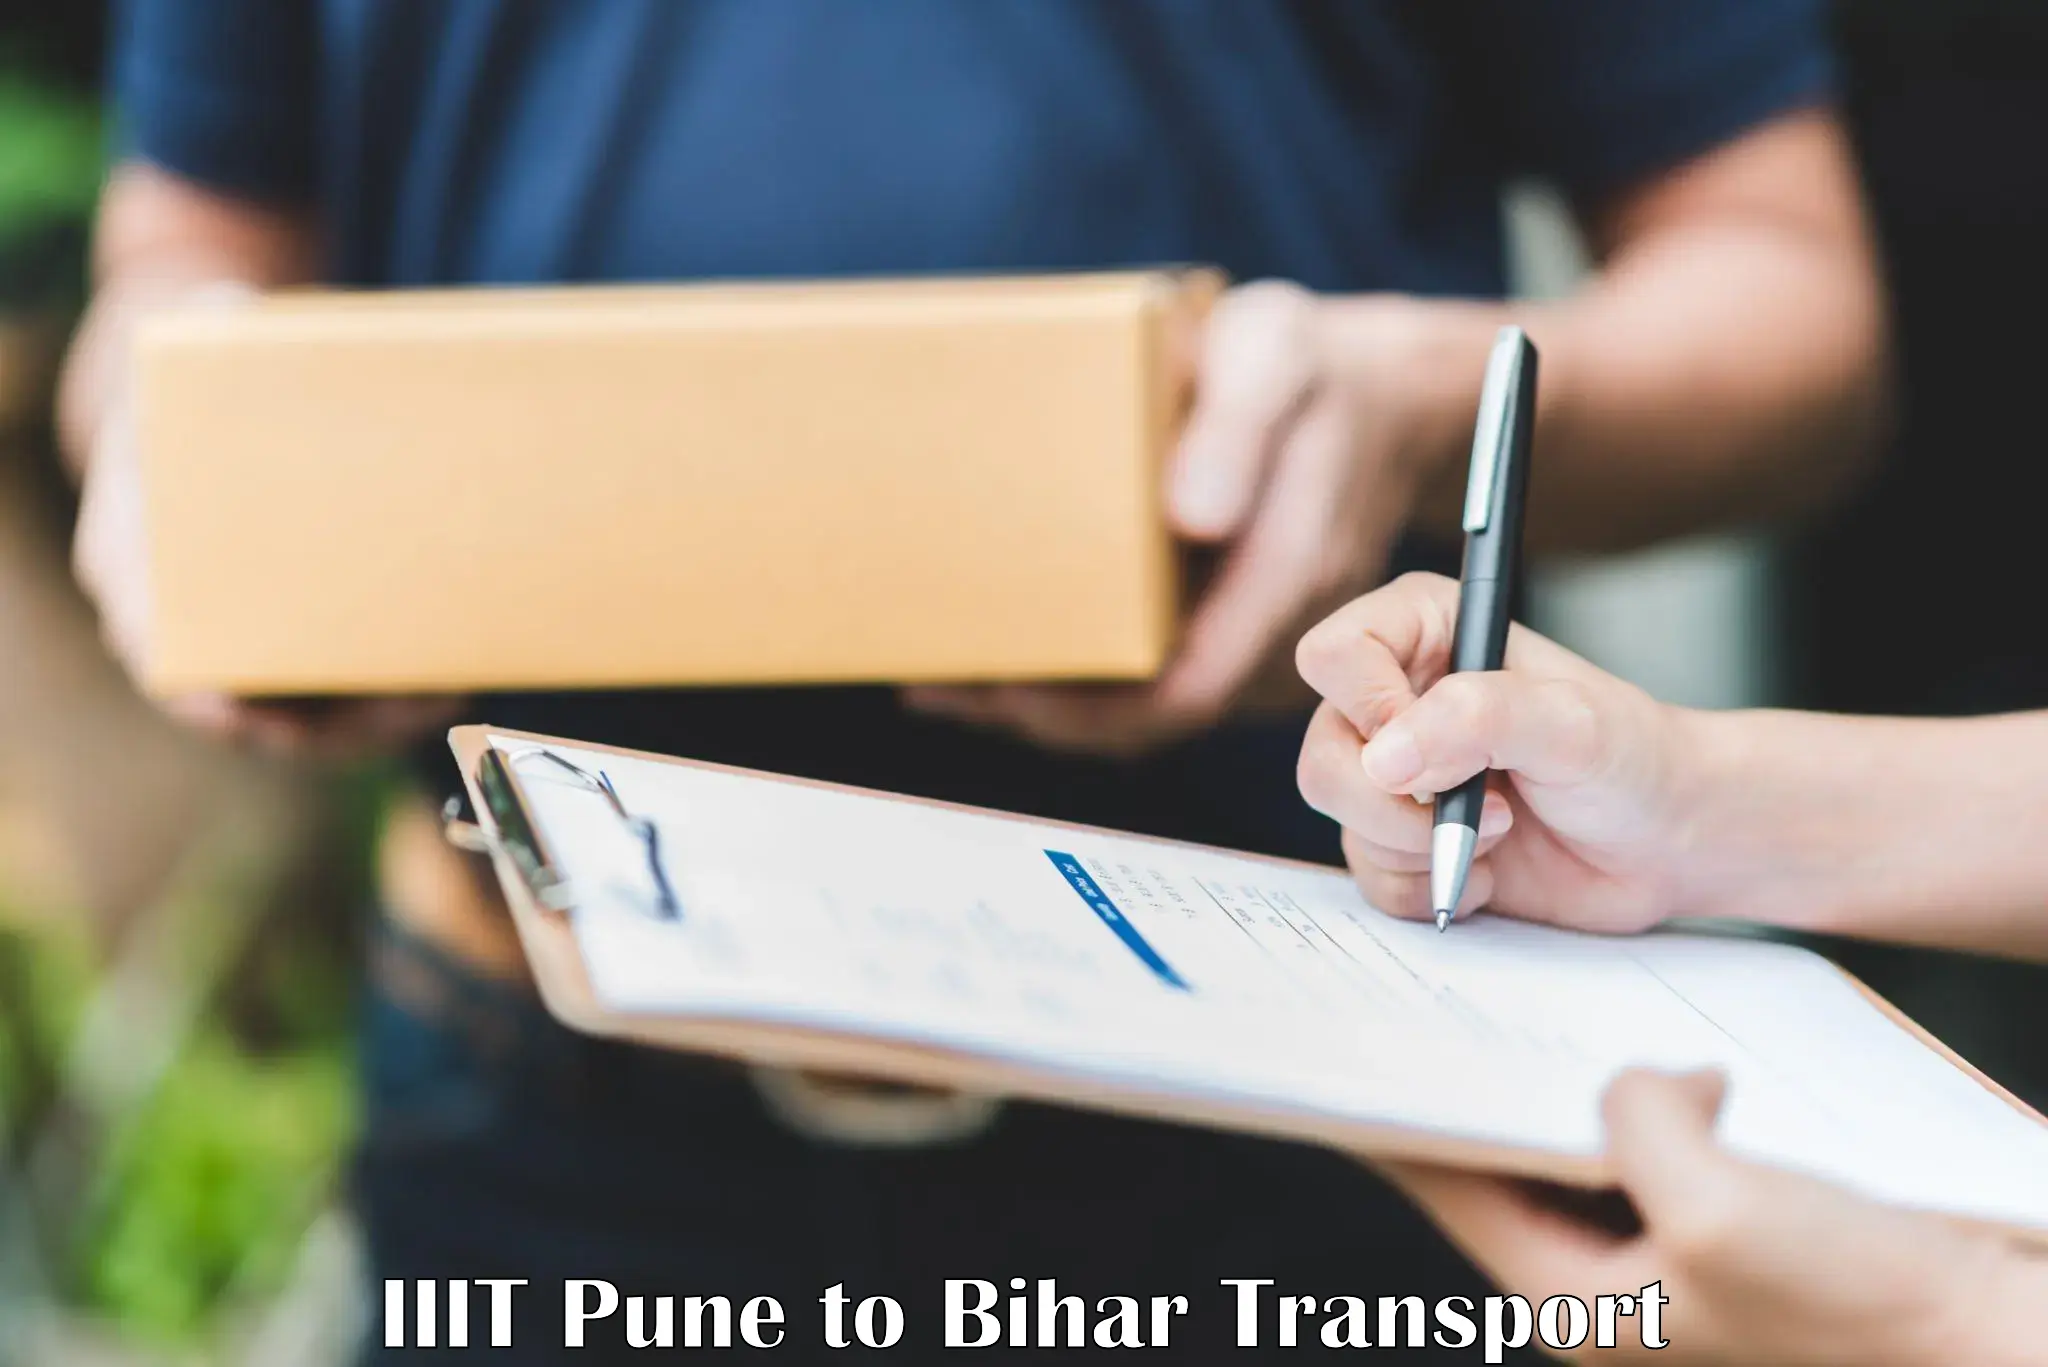 Bike transport service IIIT Pune to Bihar